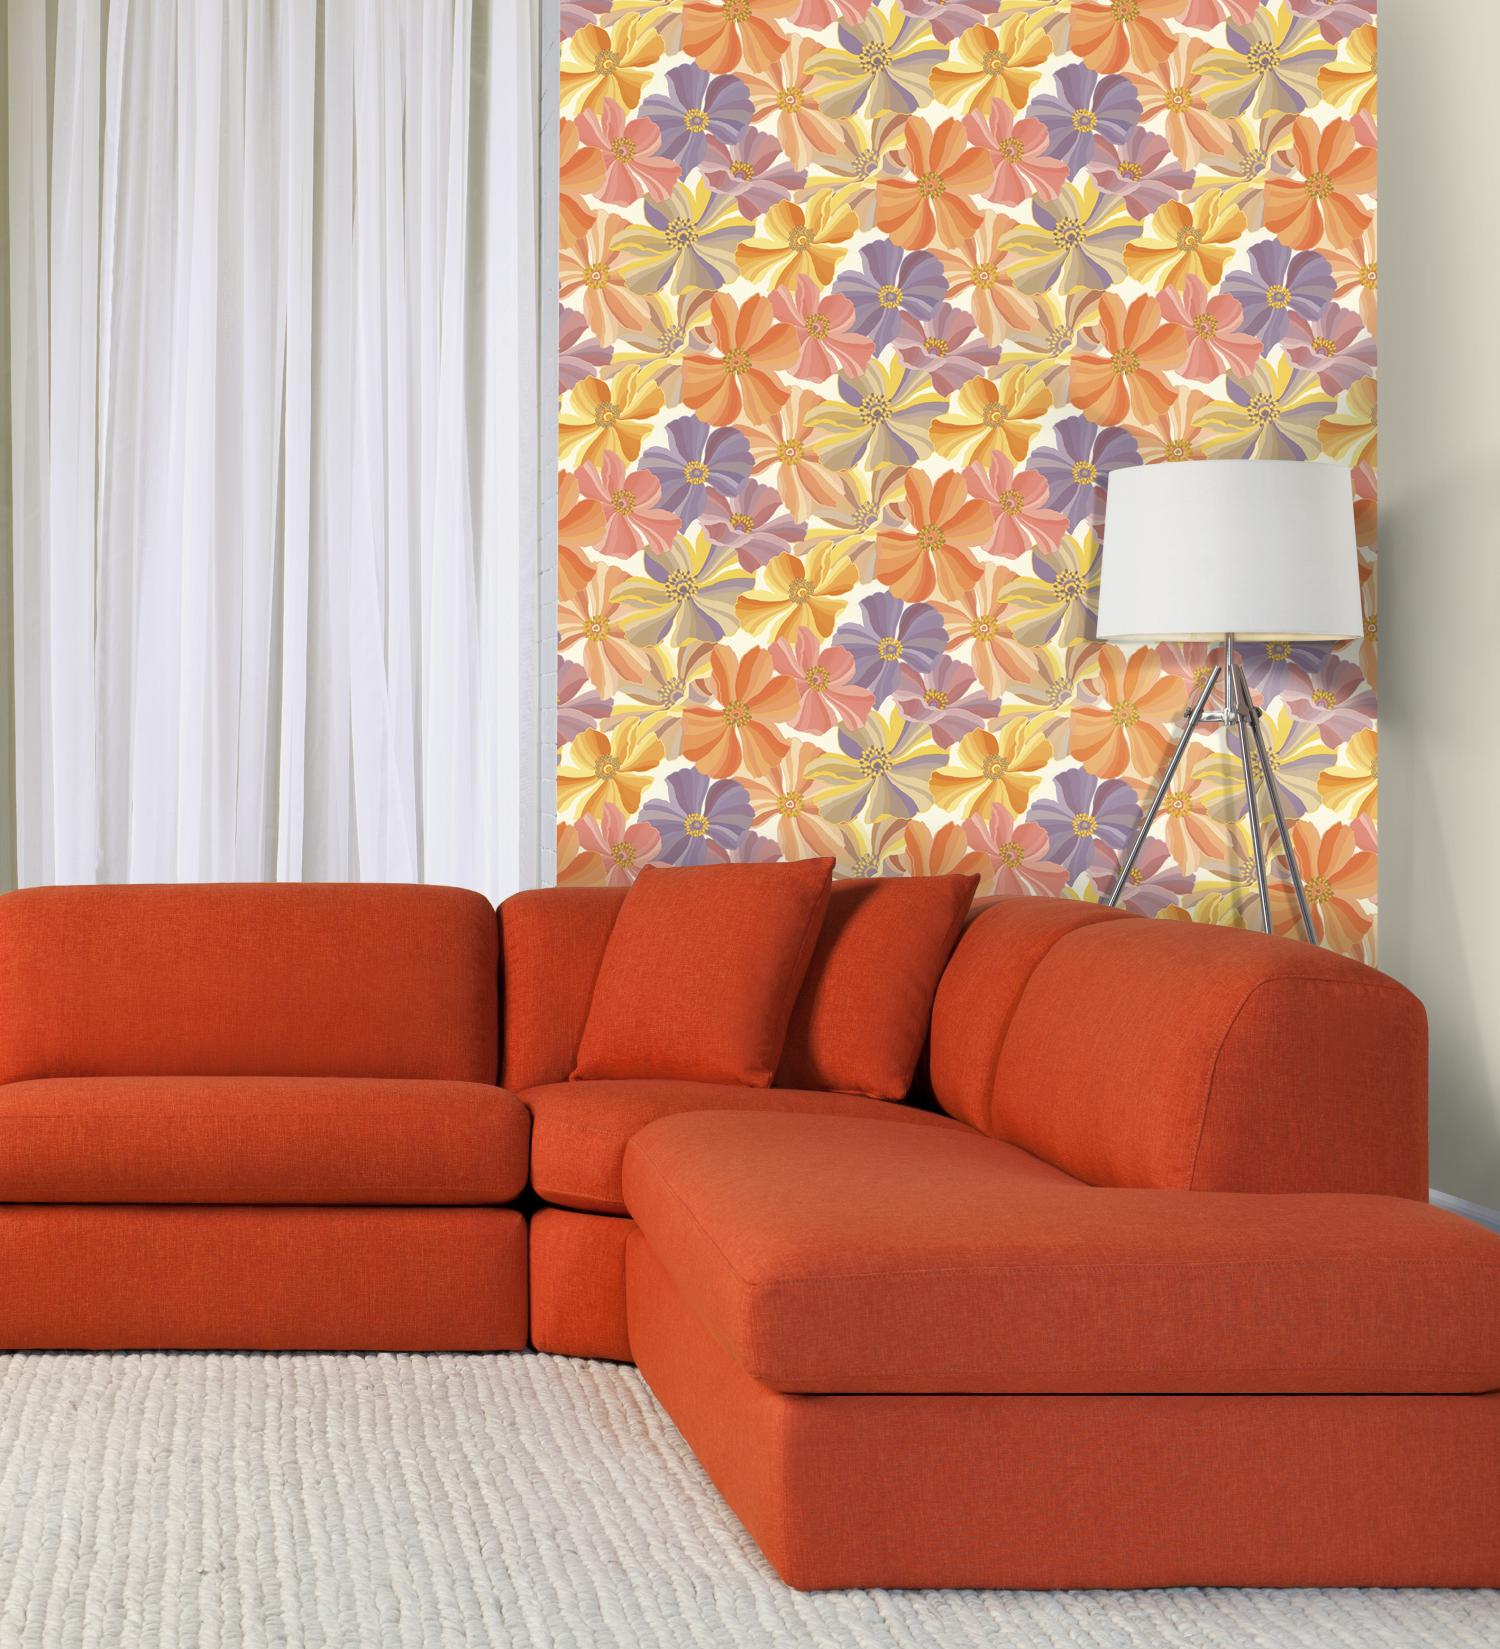 Сайт обойной фабрики. Оранжевый диван в гостиной. Оранжевый диван в интерьере. Оранжевые обои виниловые. Обои палитра в интерьере.